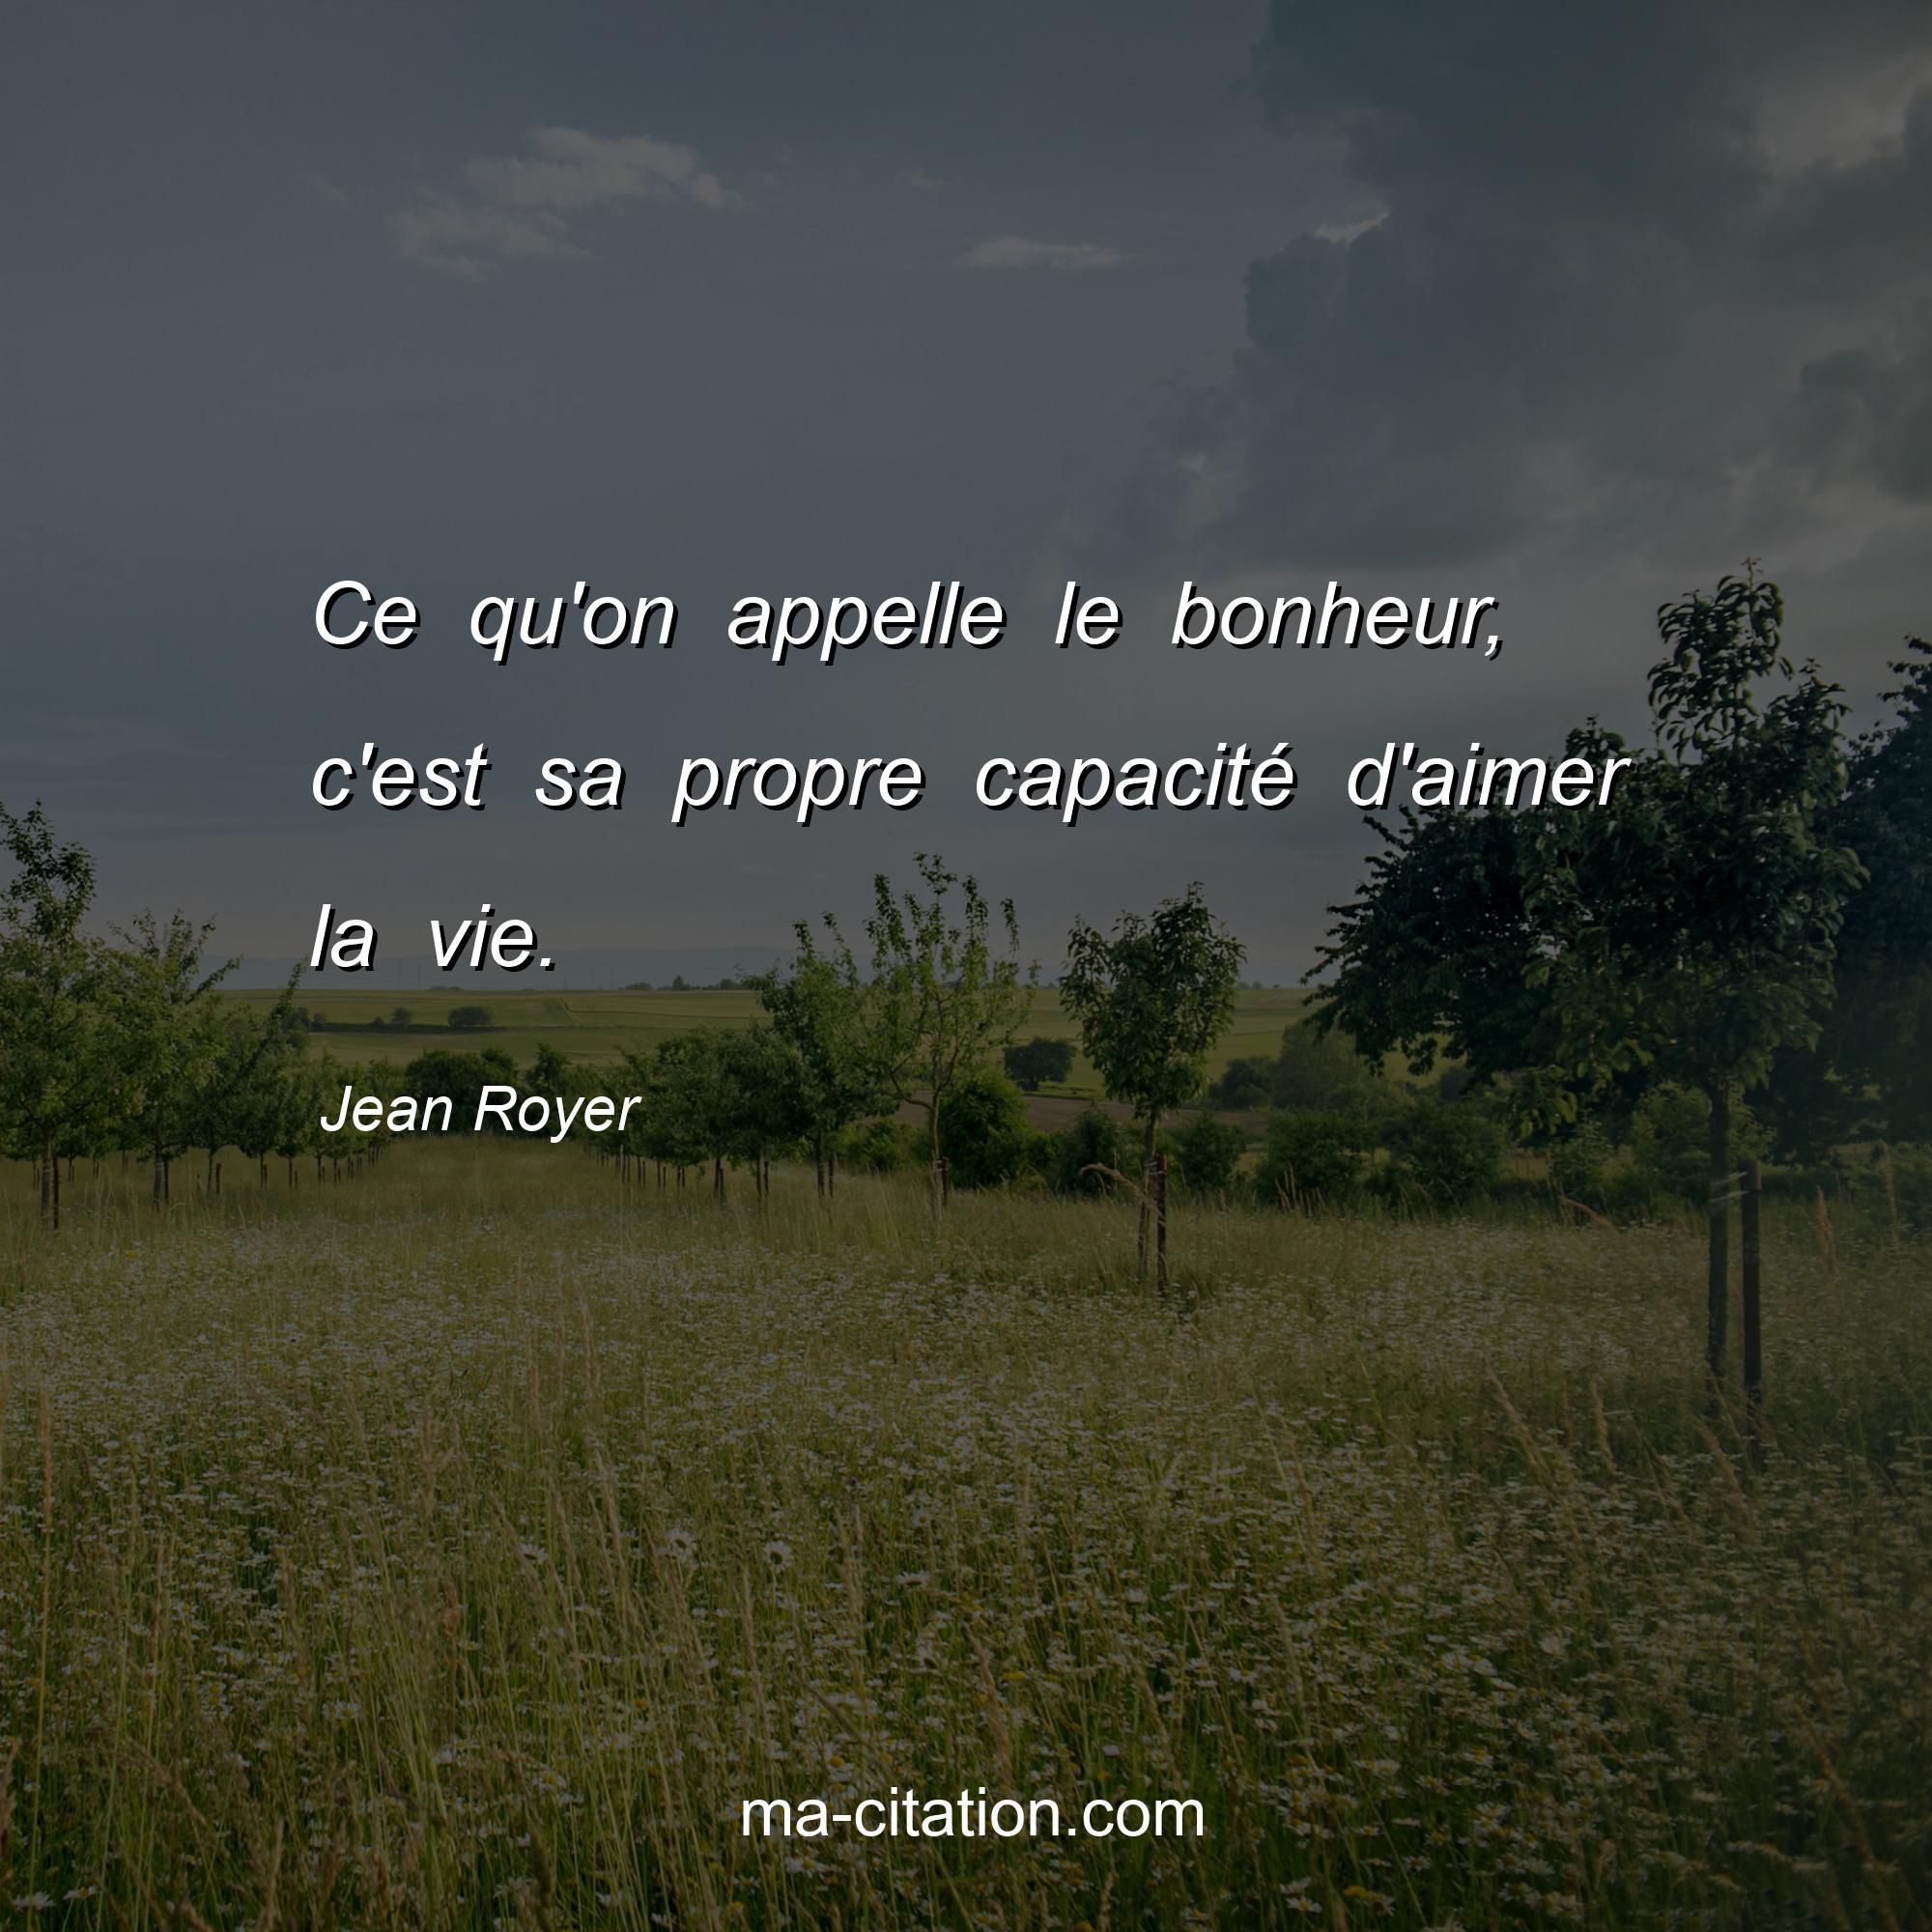 Jean Royer : Ce qu'on appelle le bonheur, c'est sa propre capacité d'aimer la vie.